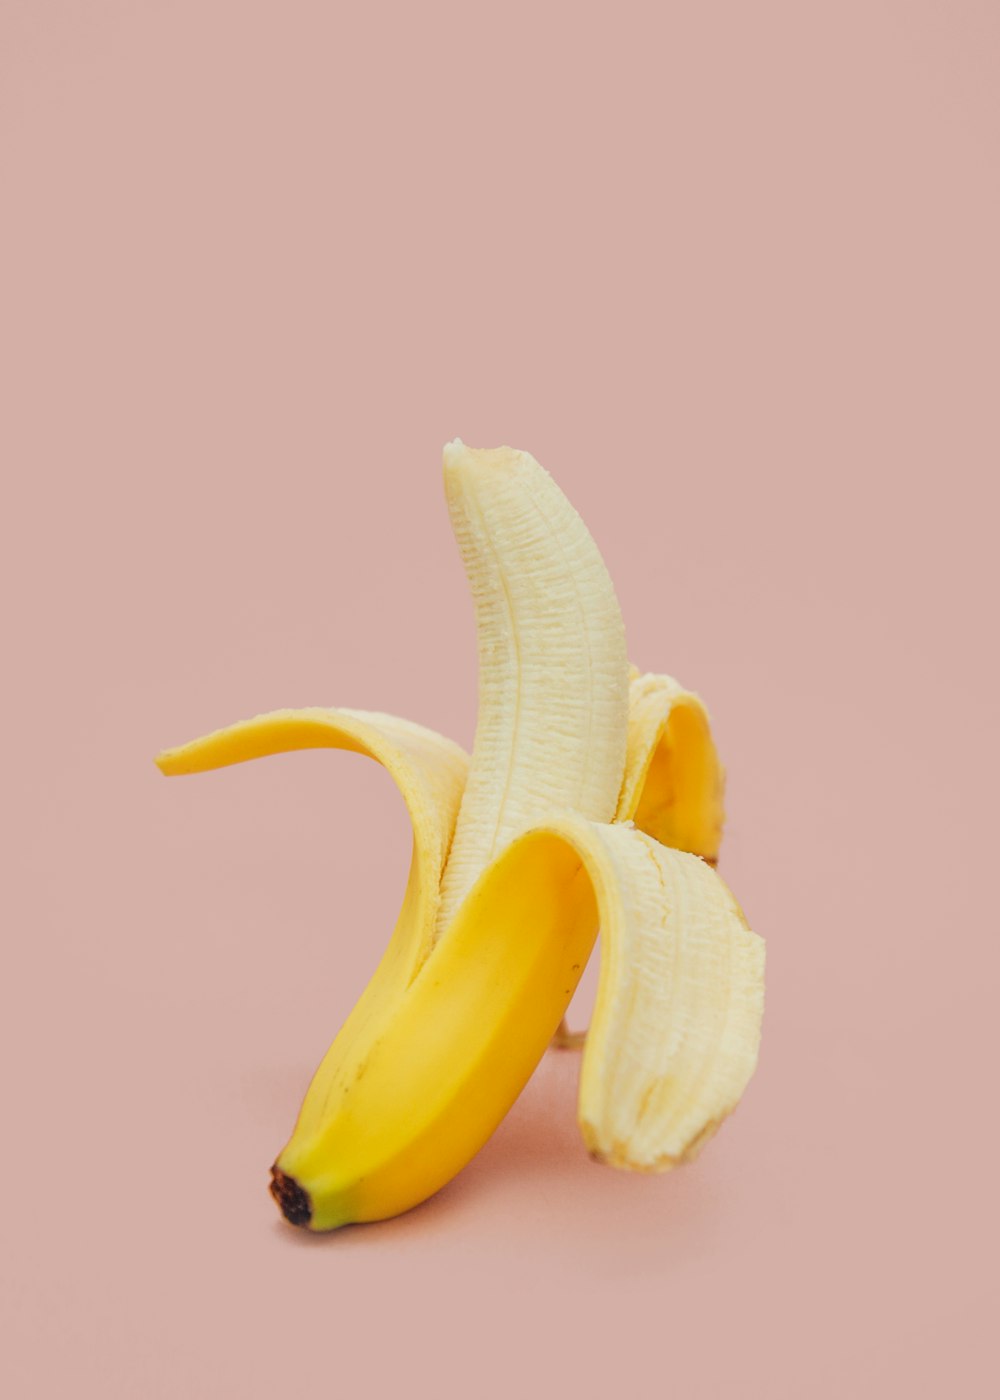 banana meio descascada